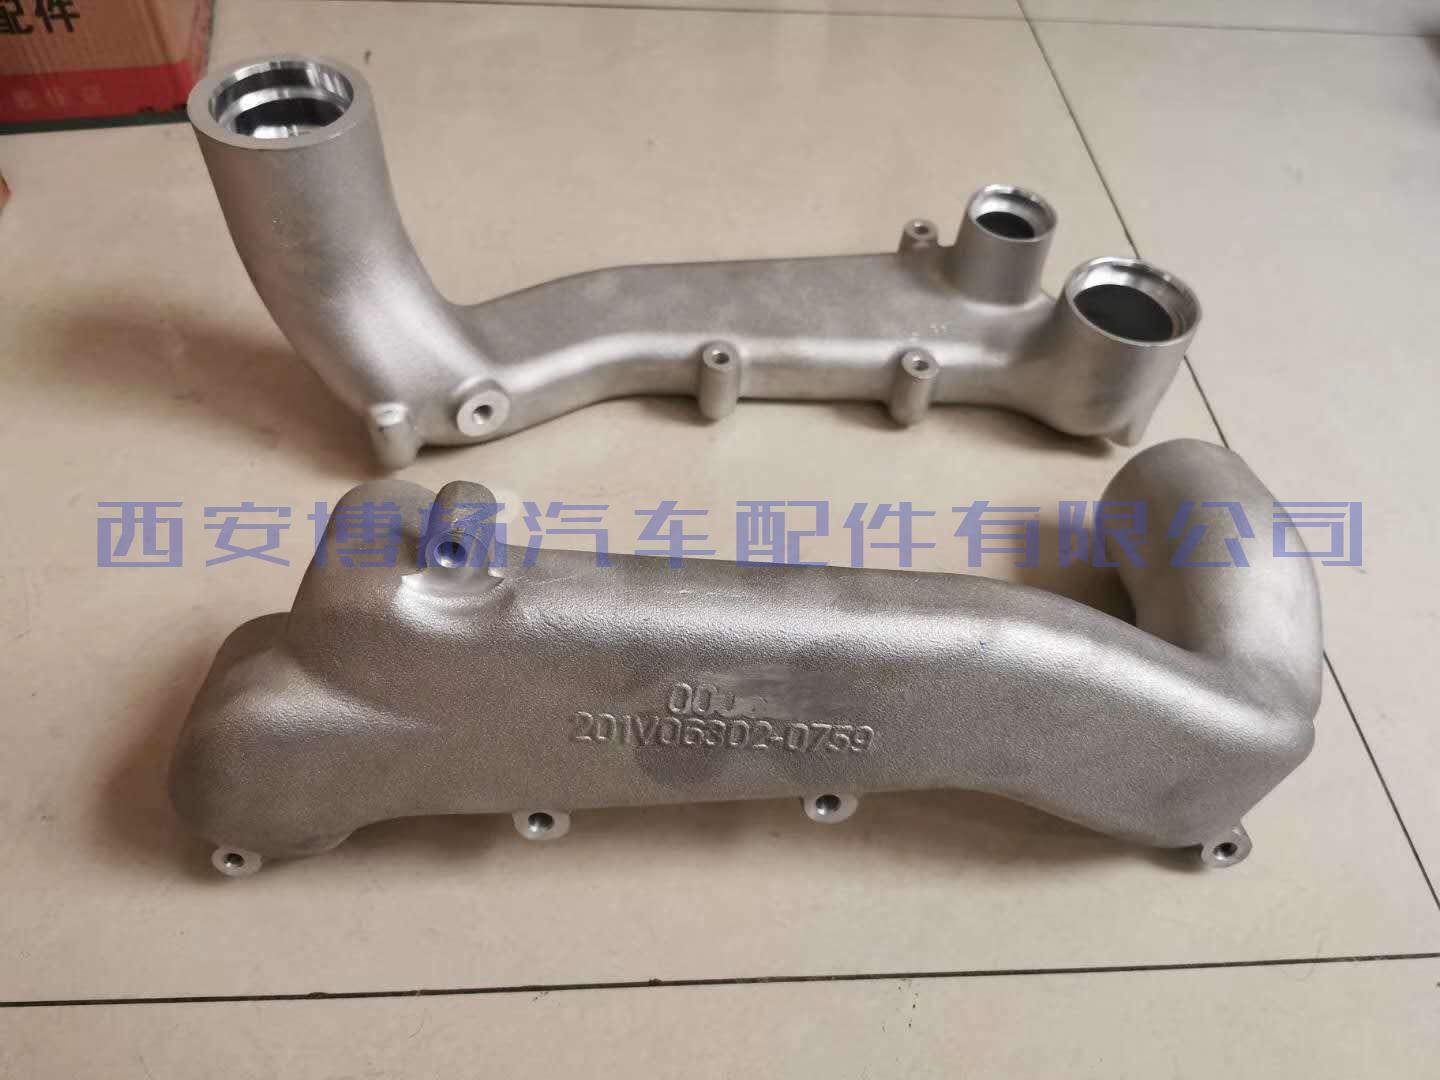 201V06302-0759中国重汽T7H冷却液弯管